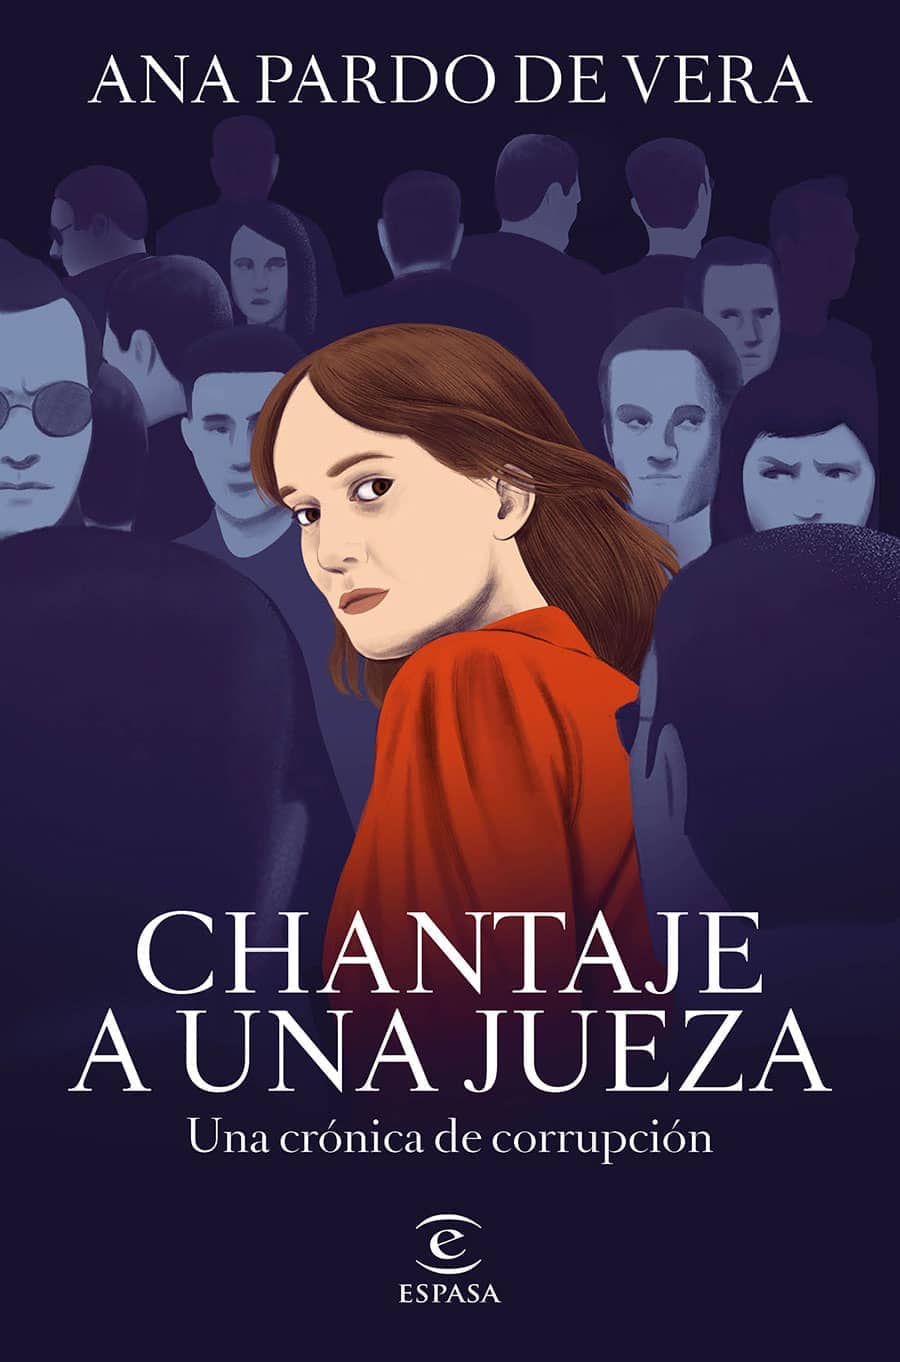 Cover Illustration for "chantaje a una Jueza"